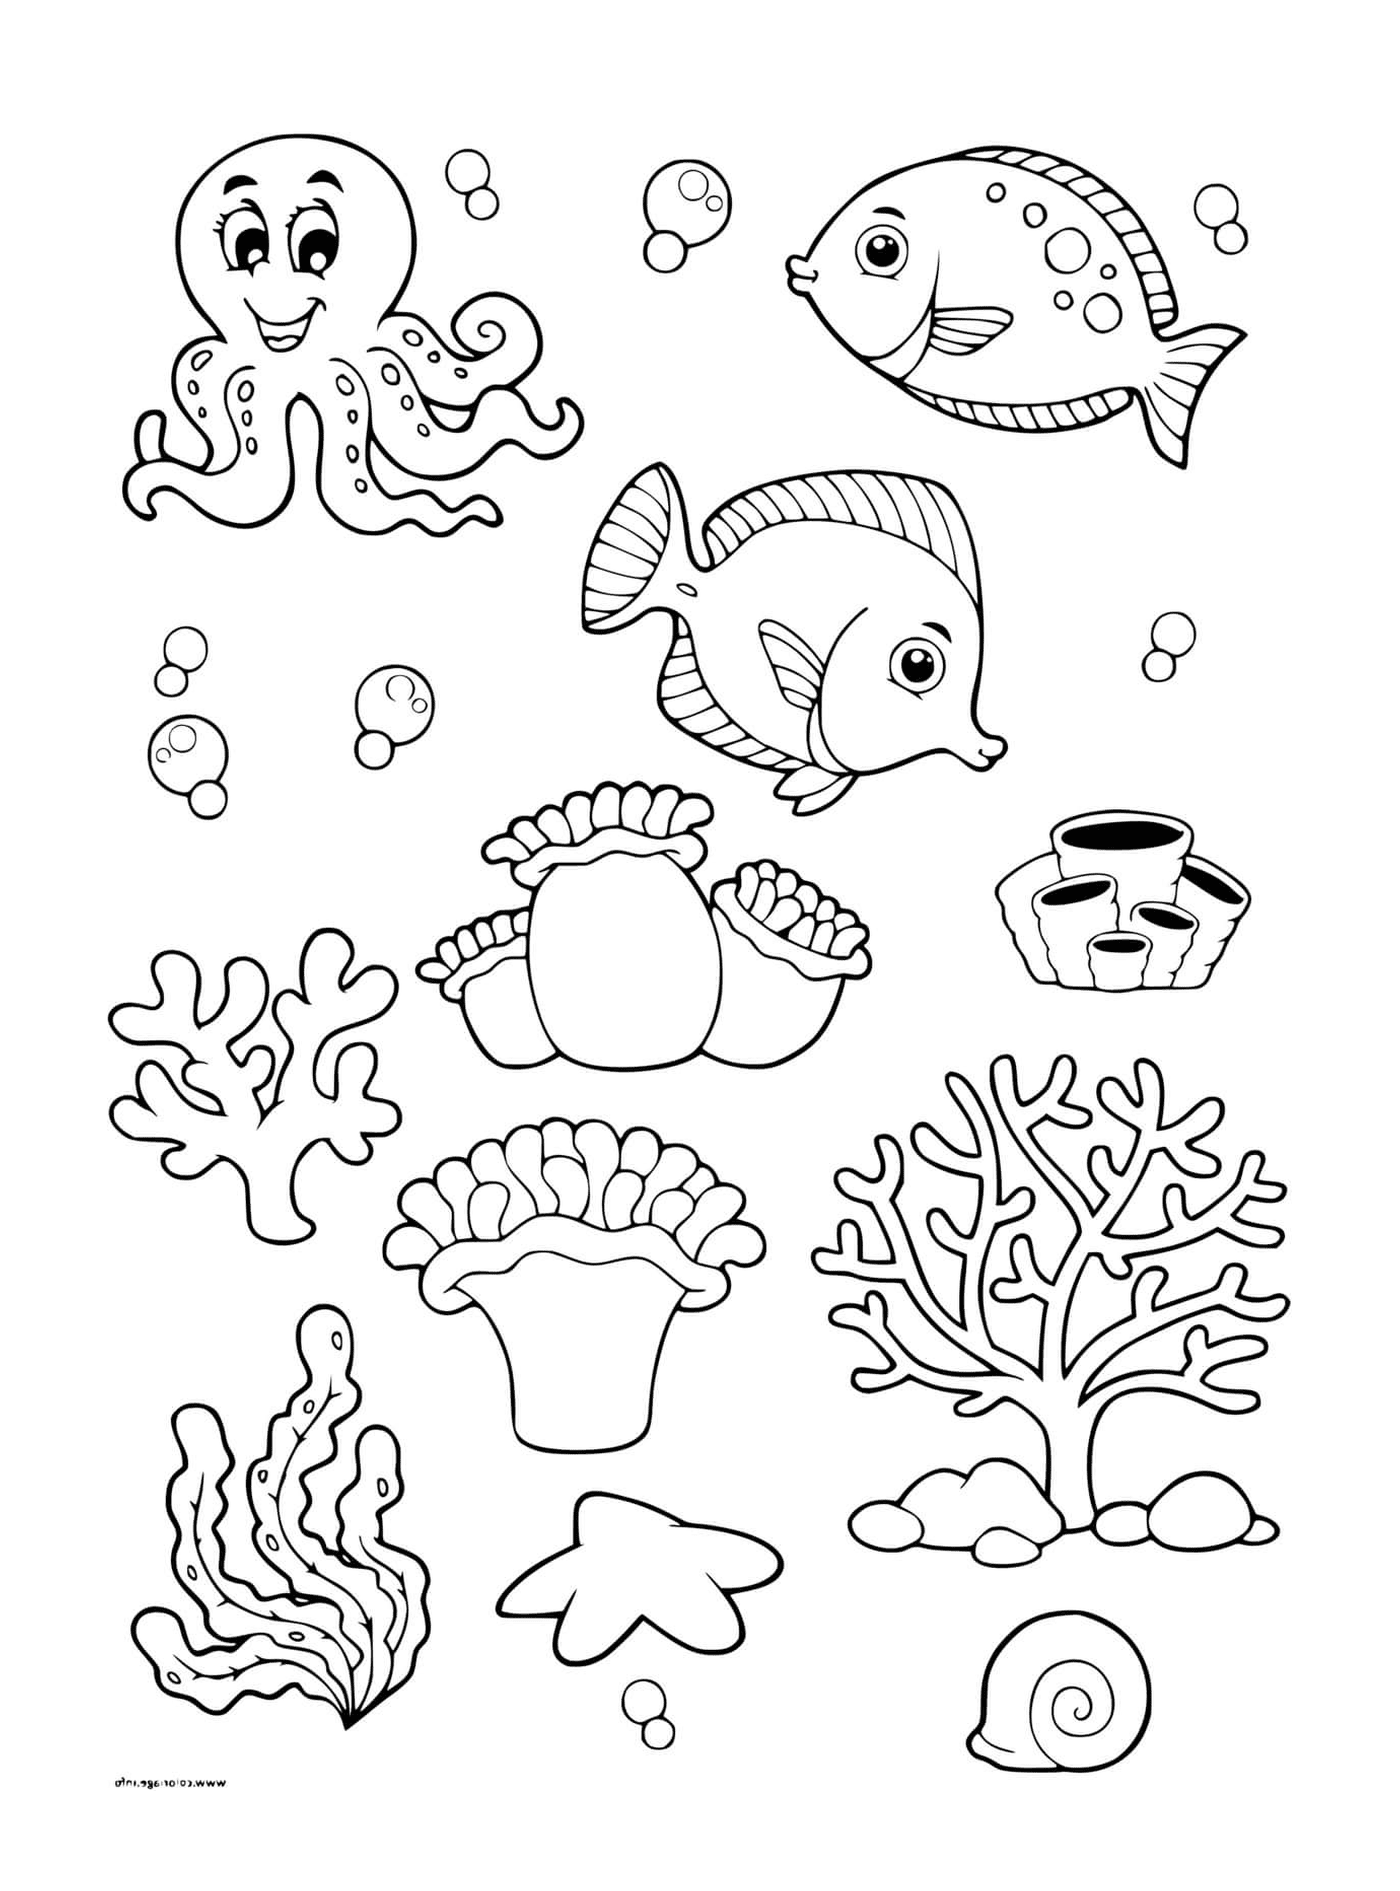  Морское дно с различными морскими животными 